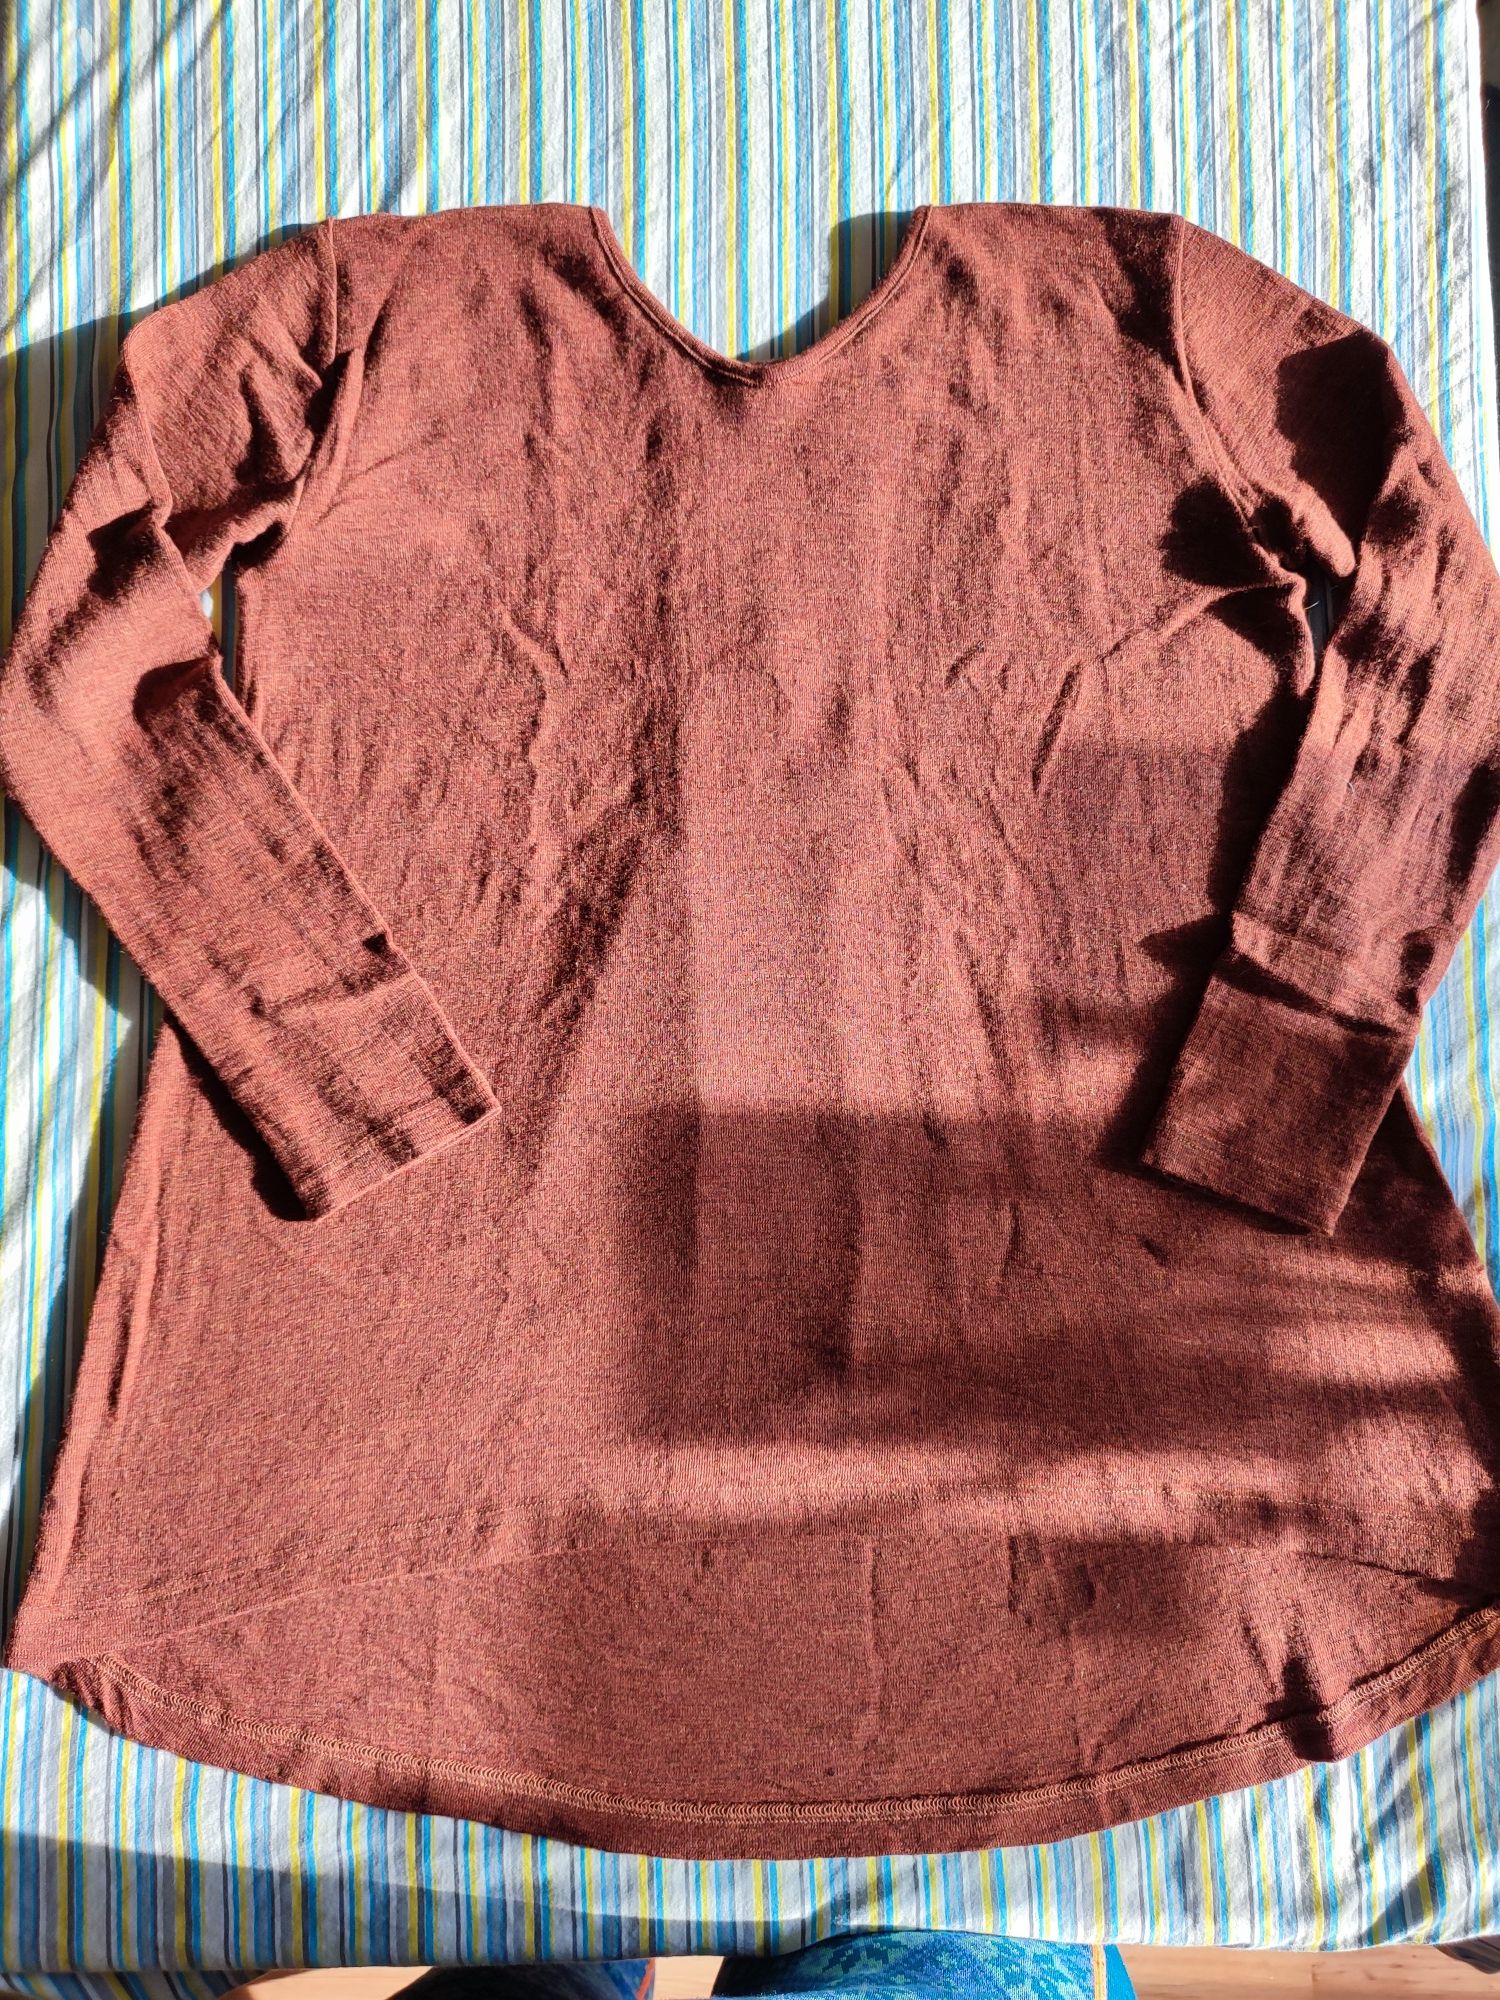 Nostebarn engel bluzka sweterek merino 38/40 M L